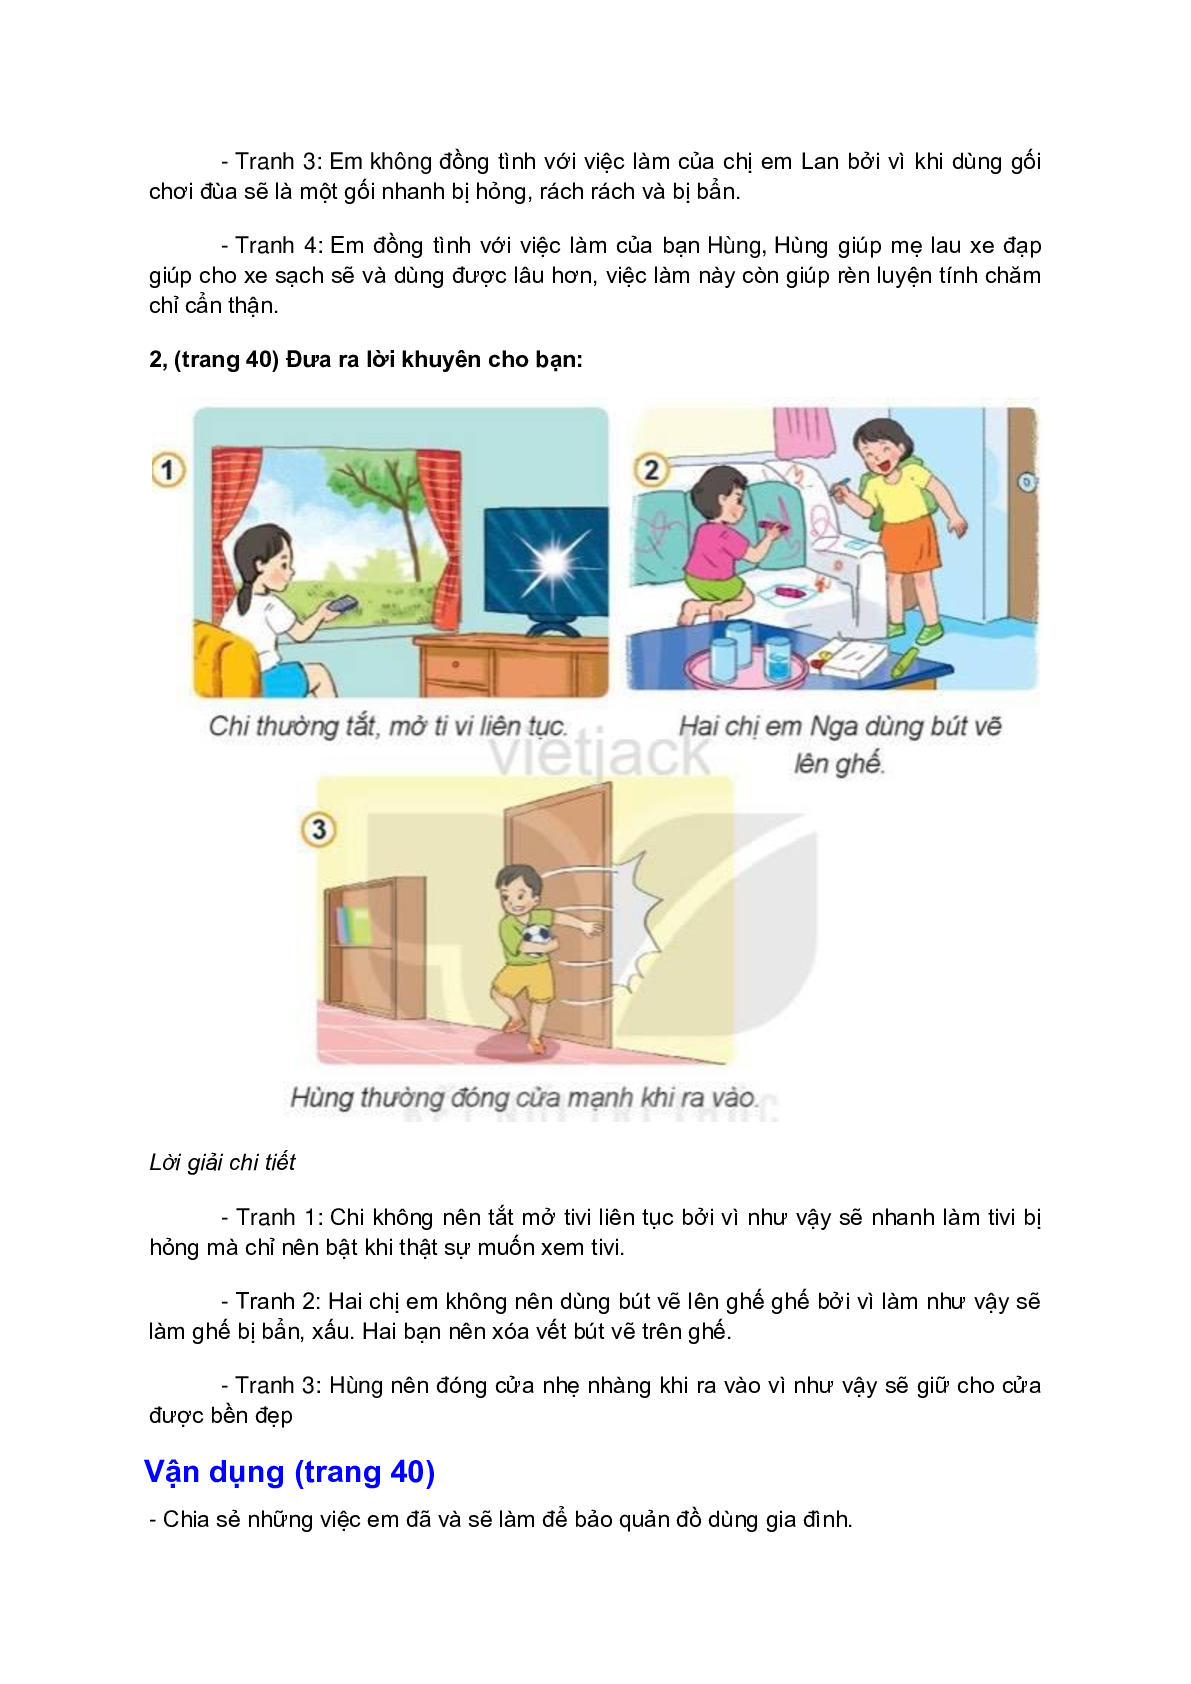 Giải SGK Đạo đức lớp 2 trang 37, 38, 39, 40 Bài 8: Bảo quản đồ dùng gia đình – Kết nối tri thức (trang 6)